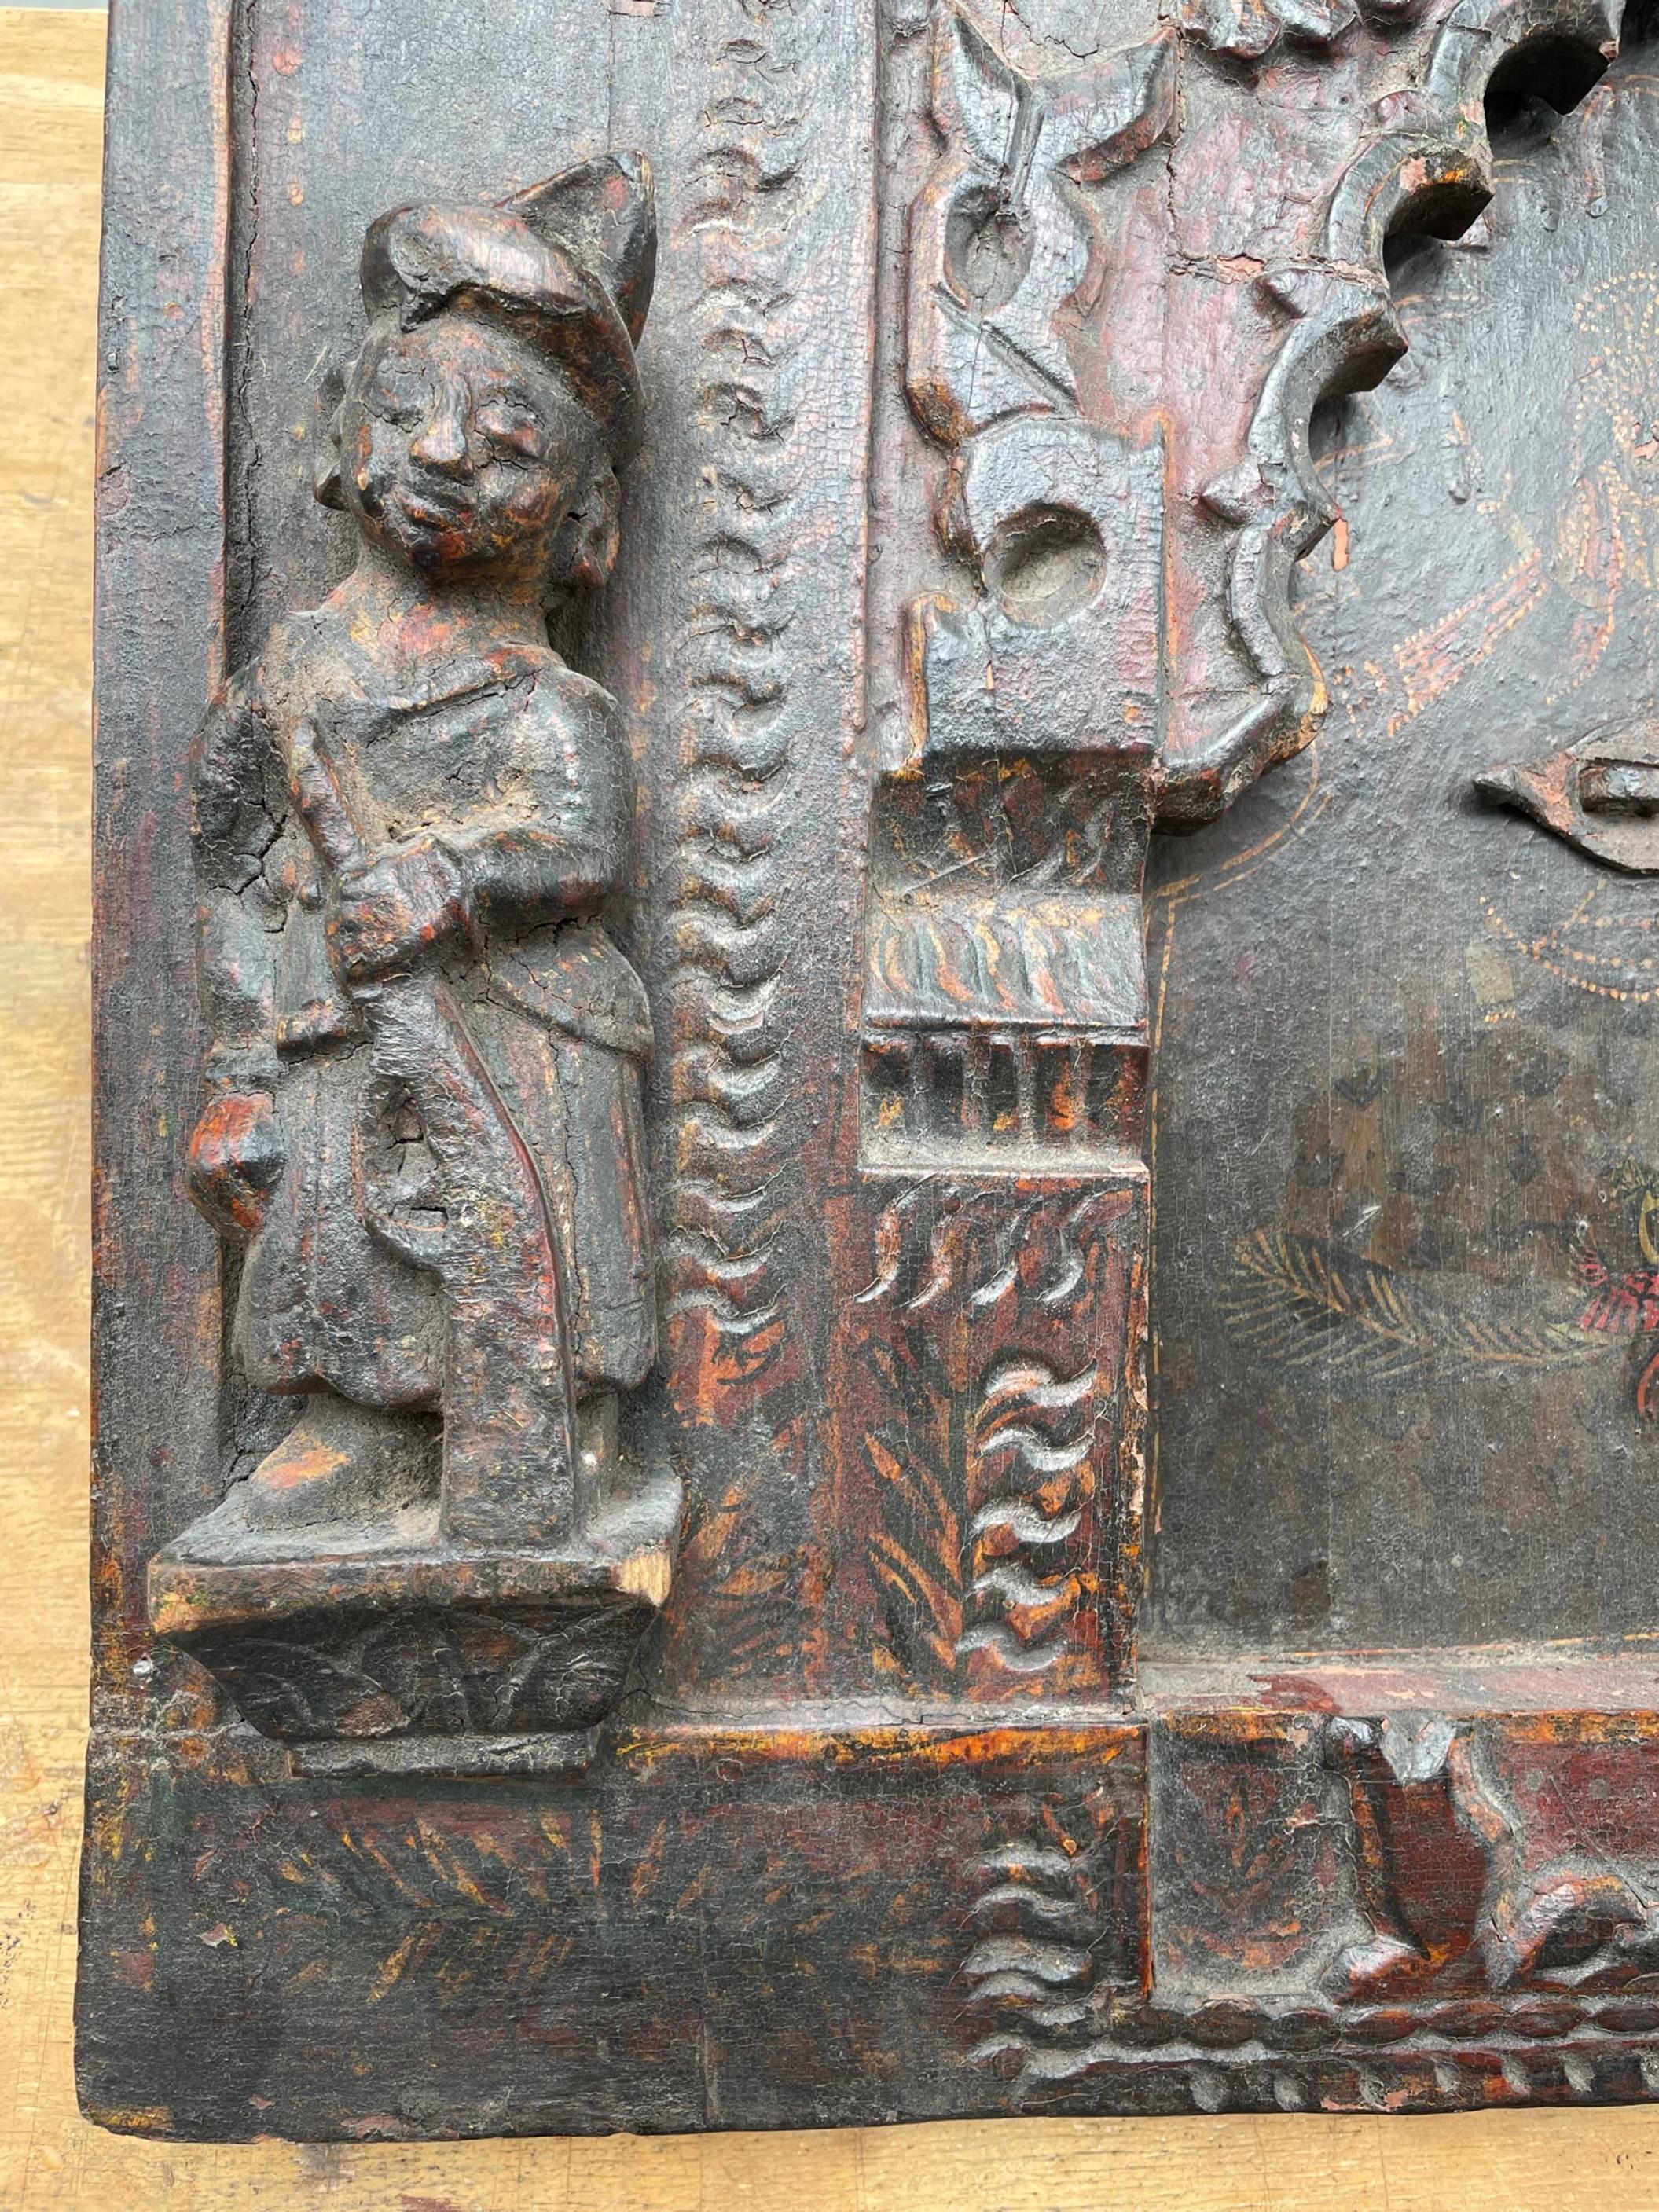 Ancien panneau mural polychrome en bois sculpté à la main avec serrure en fer.

Sculpture en bois passionnante et spectaculaire d'un panneau mural de l'Inde. Elle date probablement du 17e-18e siècle. Des bois exotiques très lourds sont utilisés